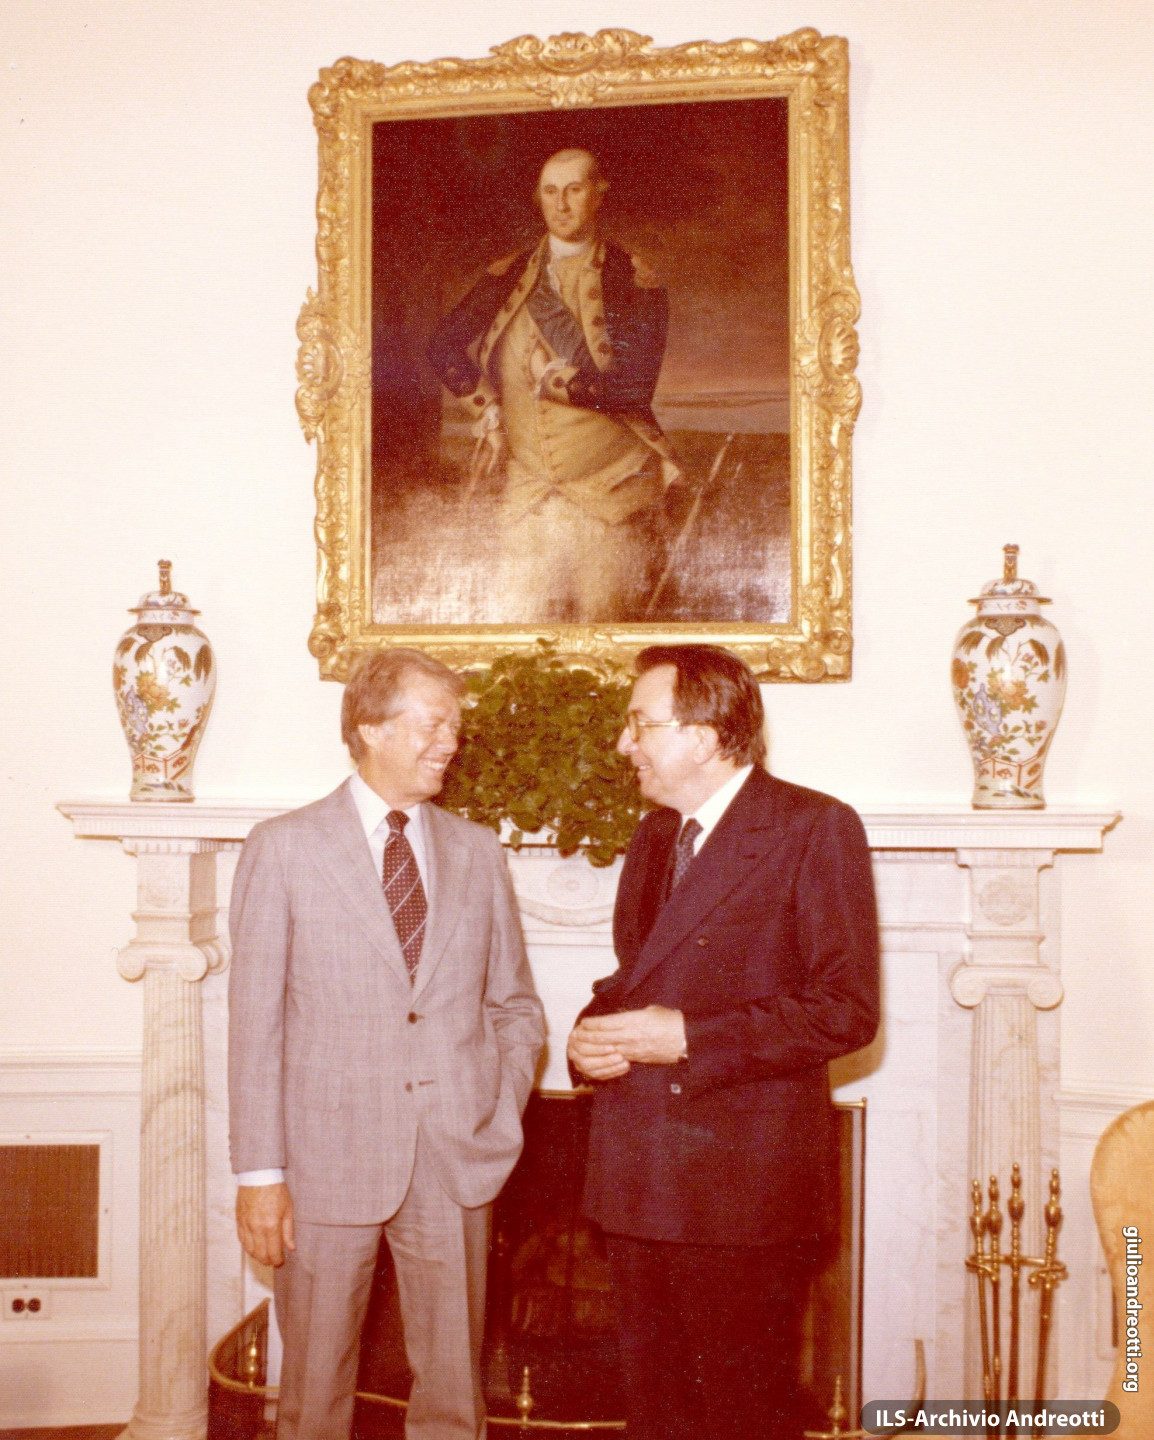 Visita ufficiale alla Casa Bianca il 26 giugno 1977. Colloquio con il Presidente Jimmy Carter.